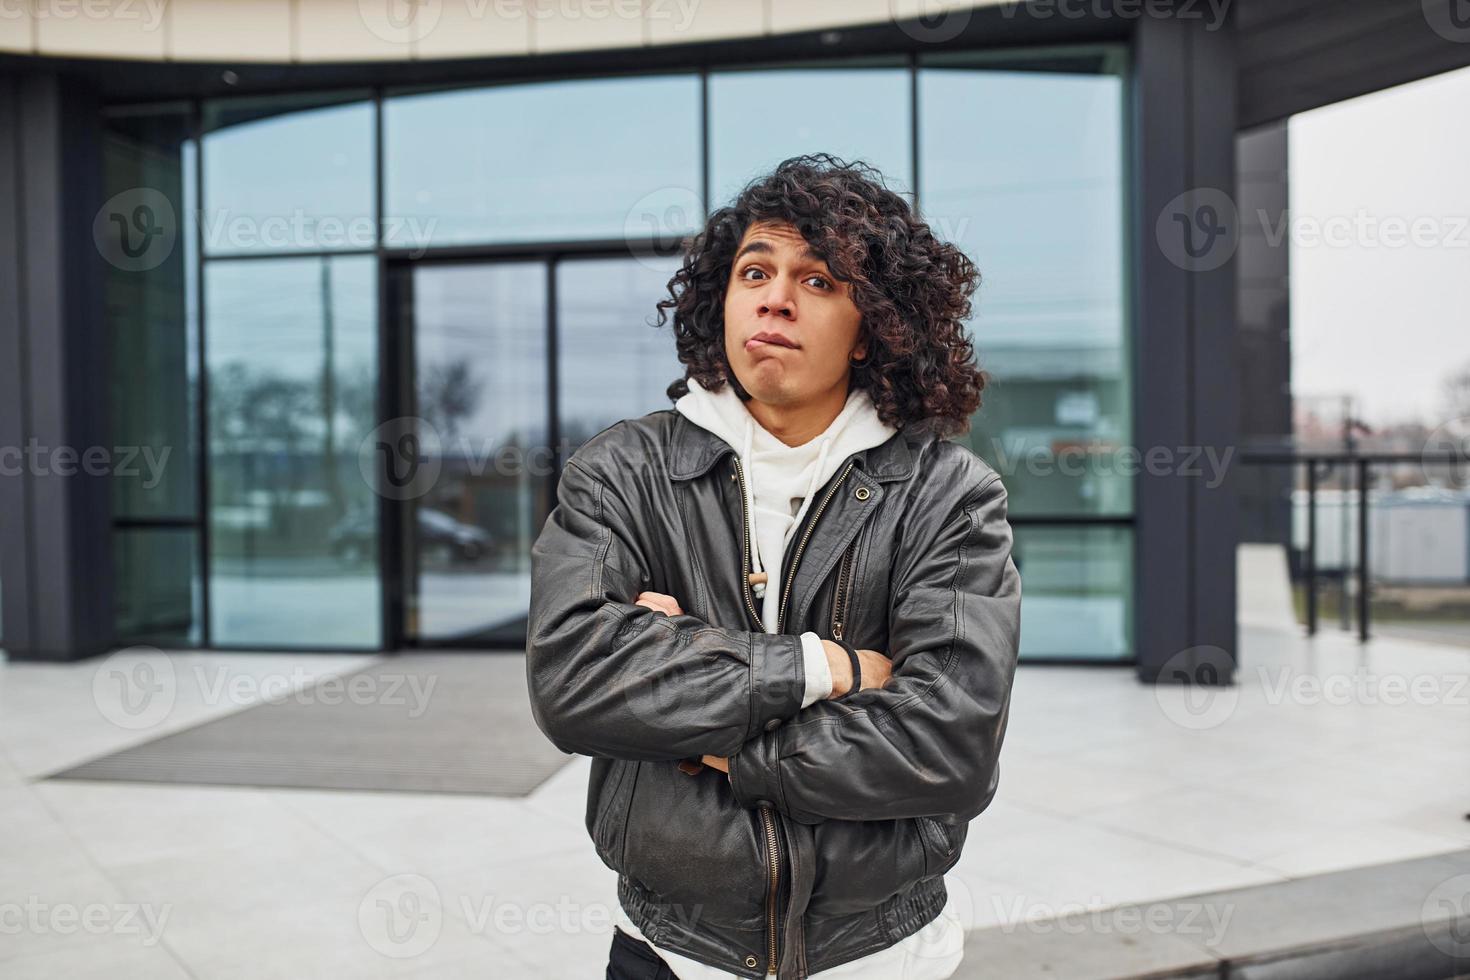 jovem bonito com cabelo preto encaracolado está na rua contra a construção foto